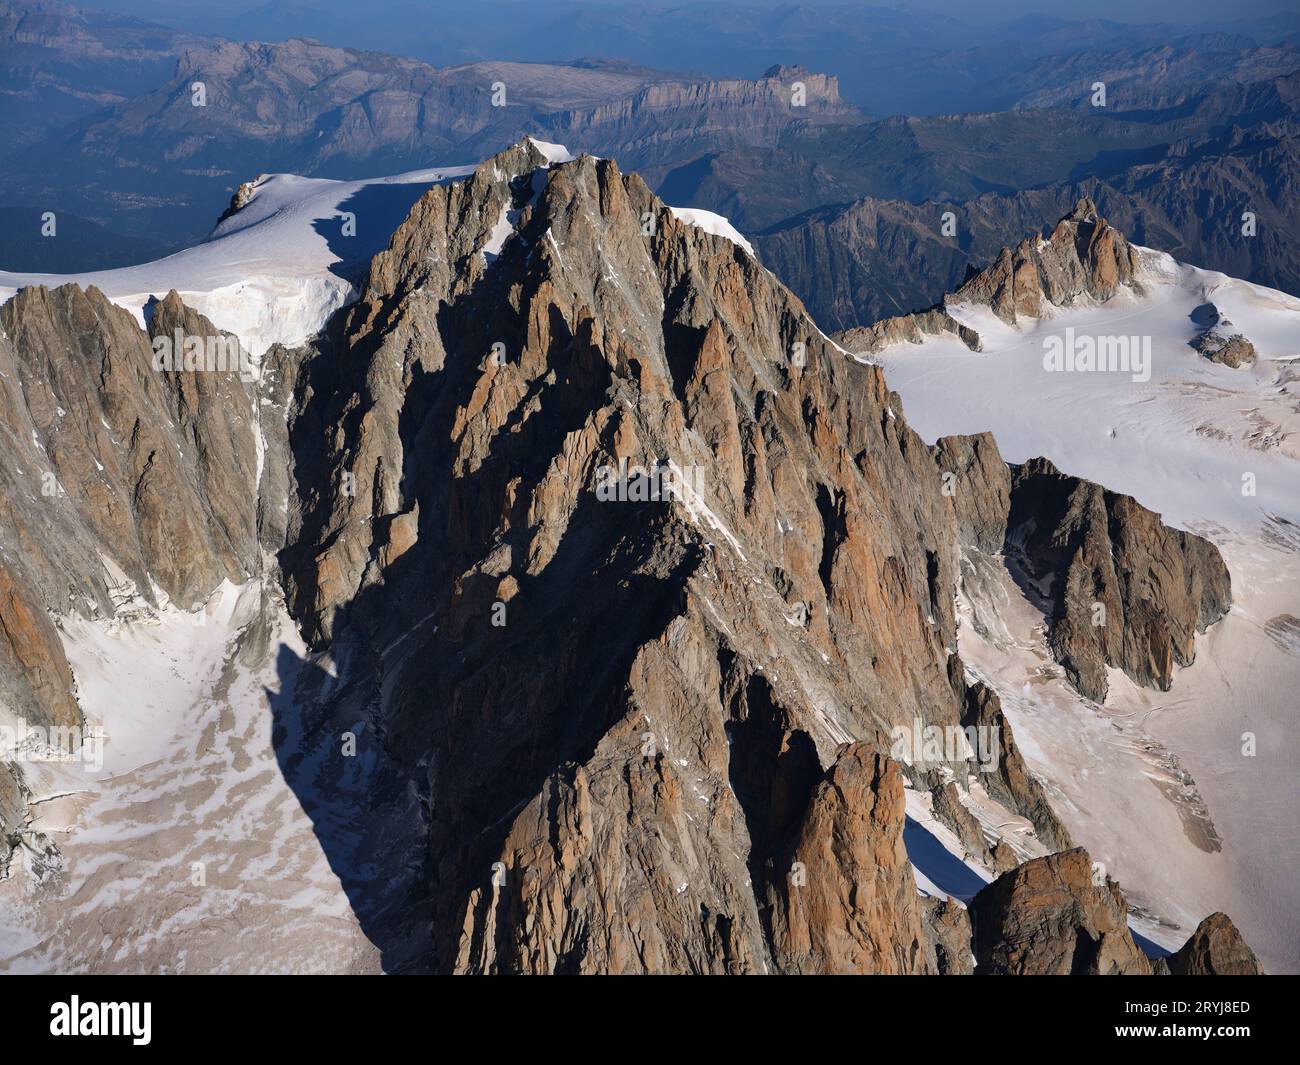 VUE AÉRIENNE. Mont blanc du Tacul (4248m) vu du sud-est, et aiguille du midi (3842m) au loin sur la droite. Chamonix, France. Banque D'Images